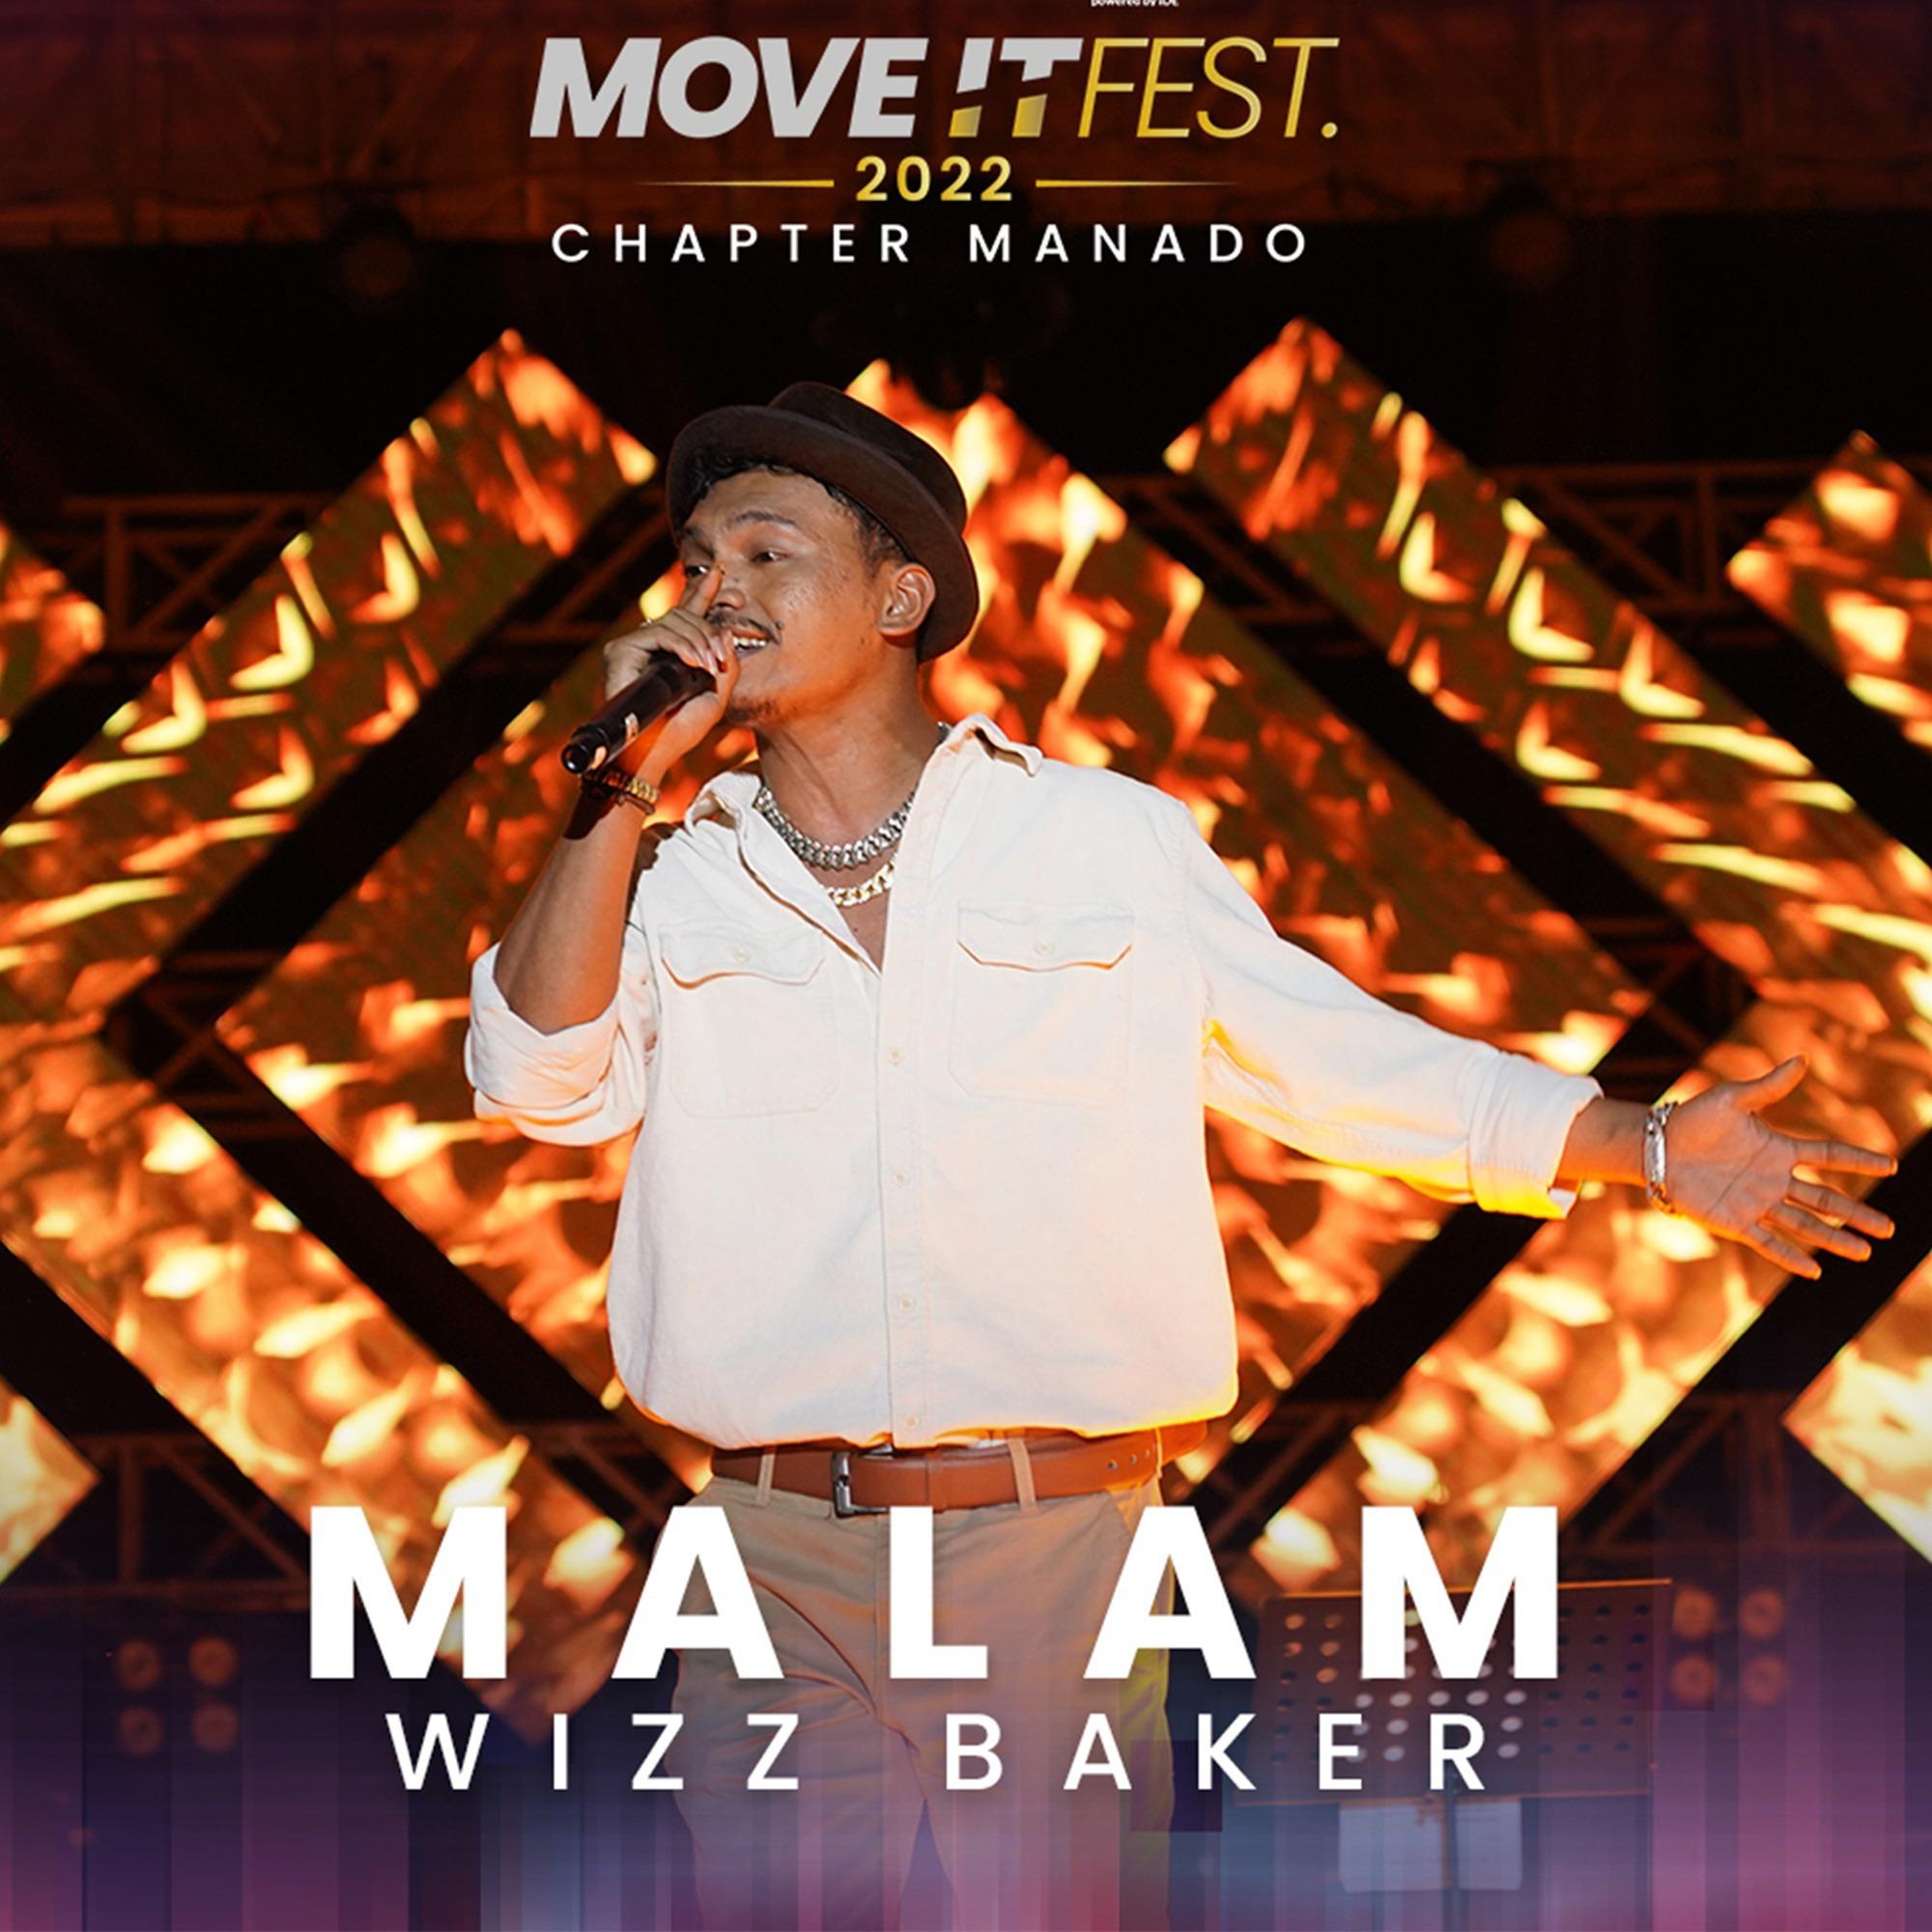 Wizz Baker - Malam (Move It Fest 2022 Chapter Manado)